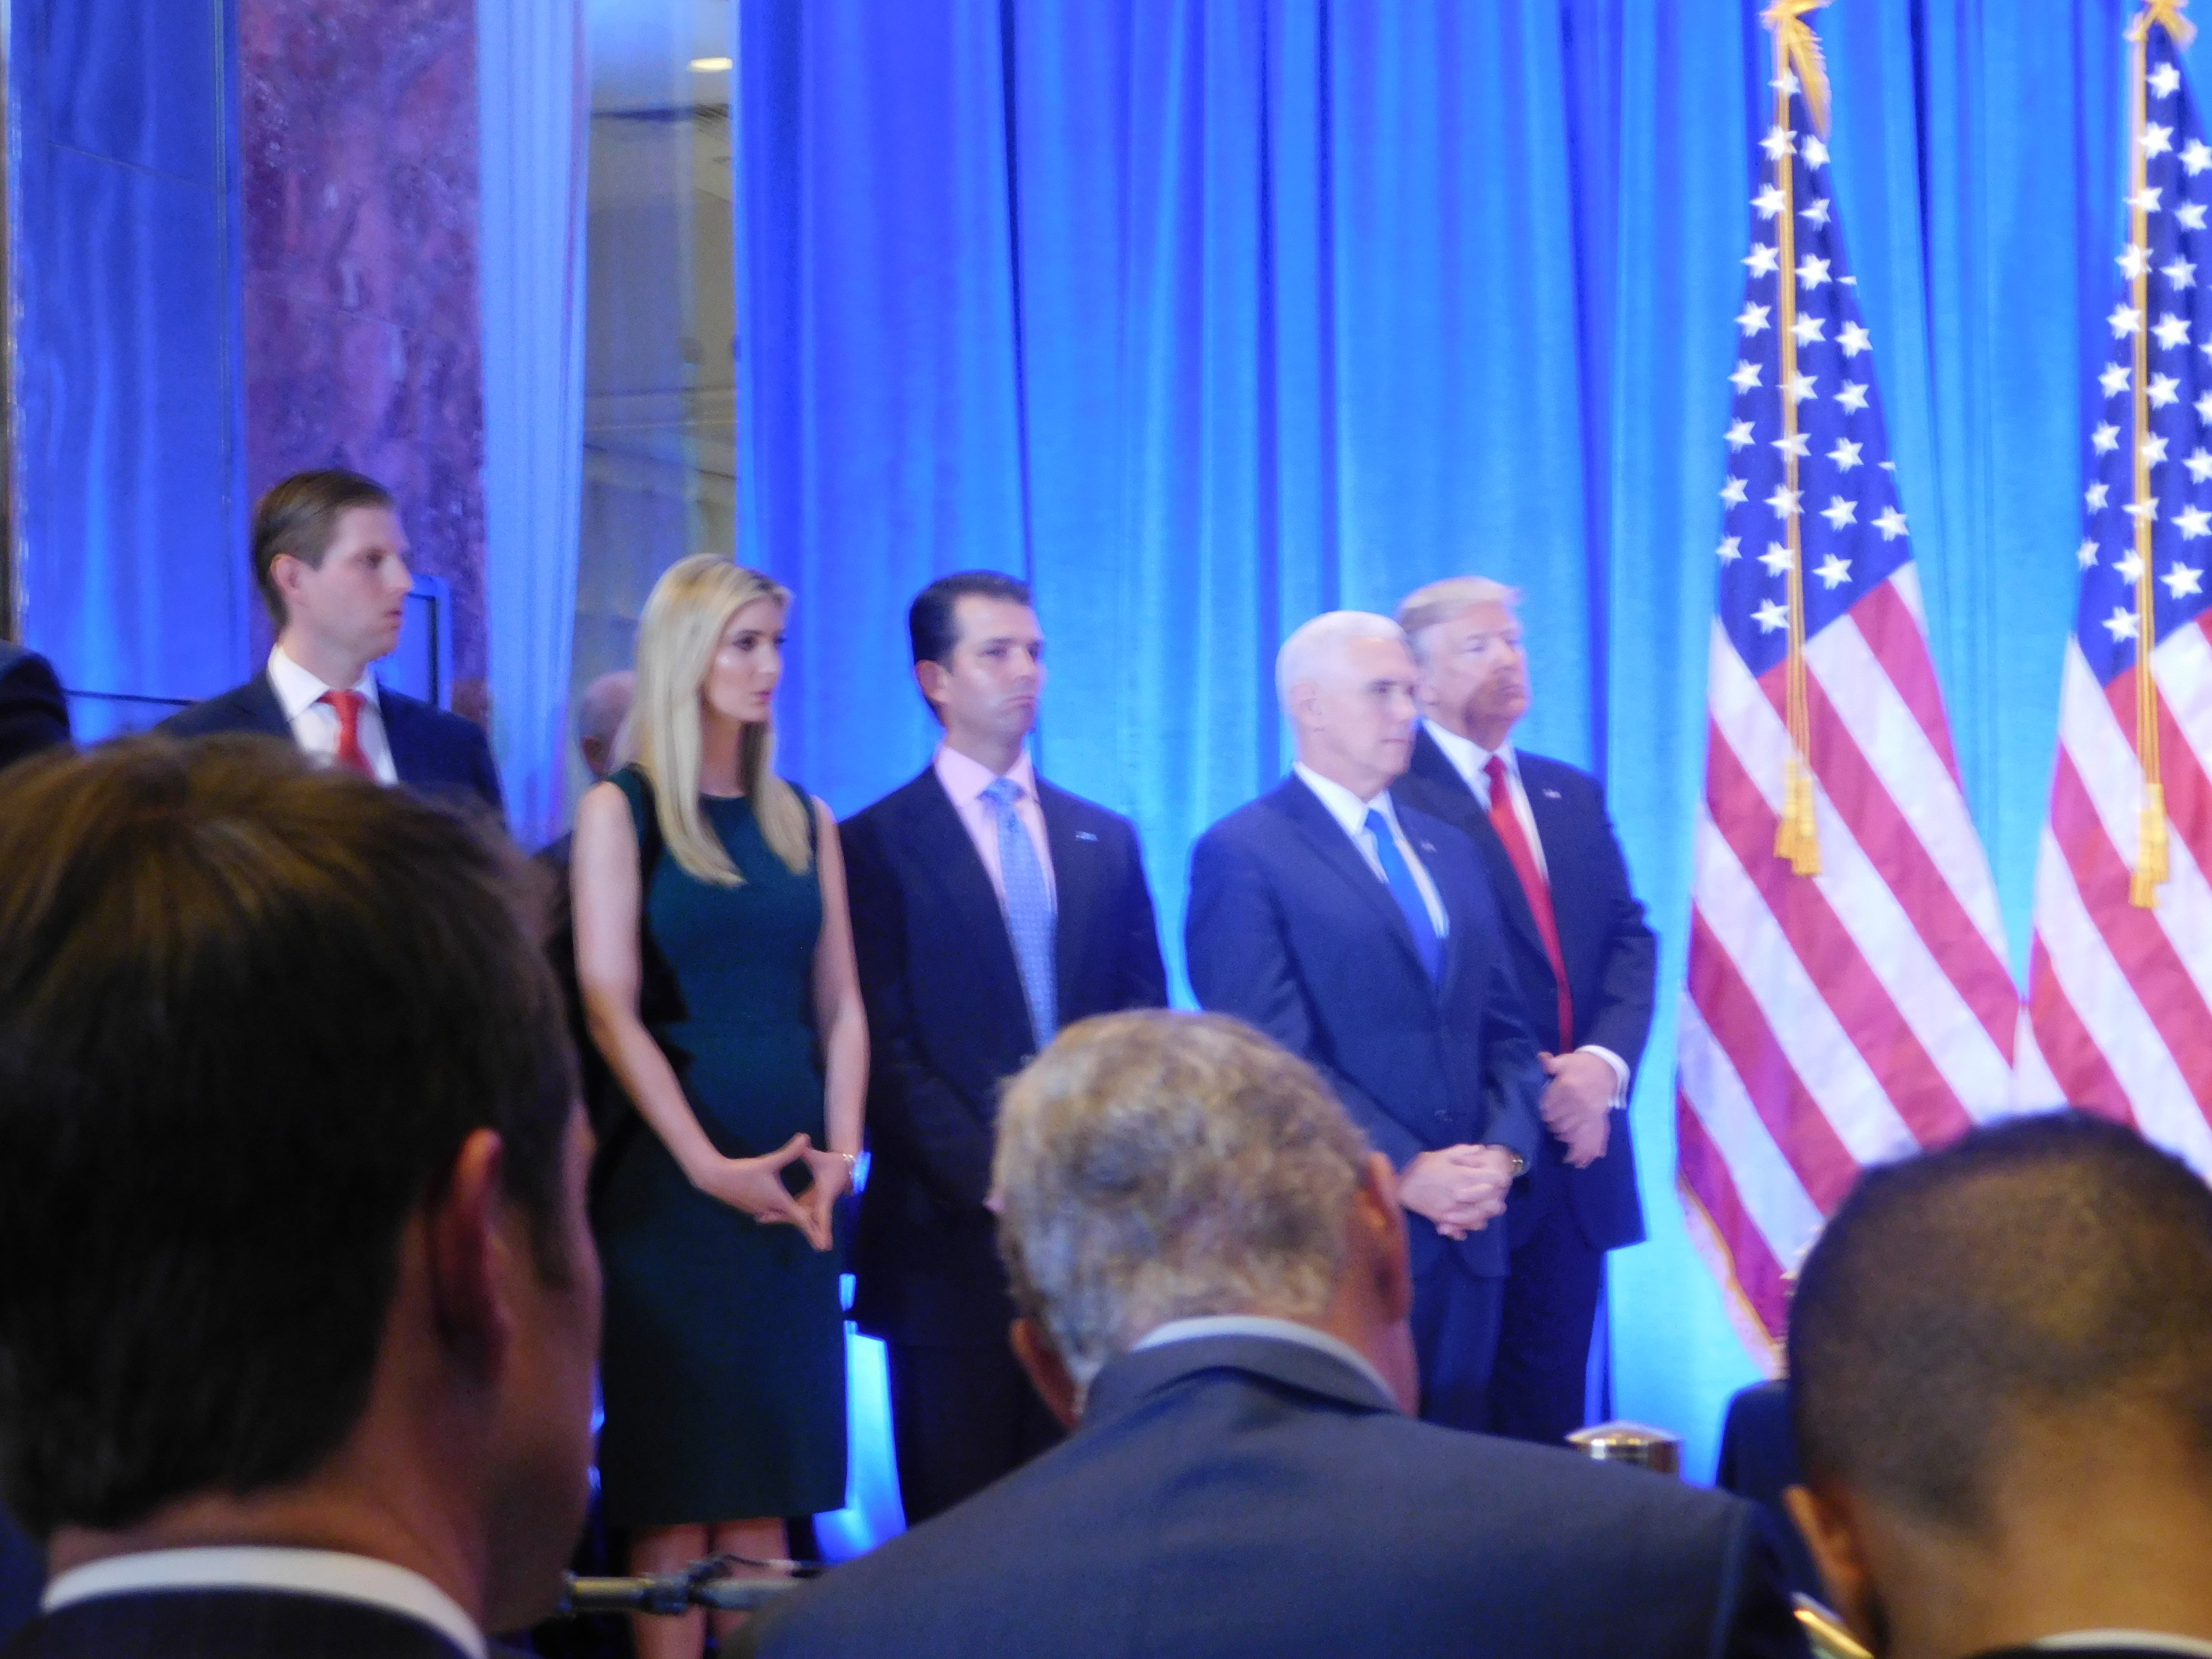 Durante su primera conferencia, el presidente electo estuvo acompañado de sus hijos Eric, Ivanka, Donald y del vicepresidente electo, Mike Pence, no por Melania, la próxima Primera Dama.